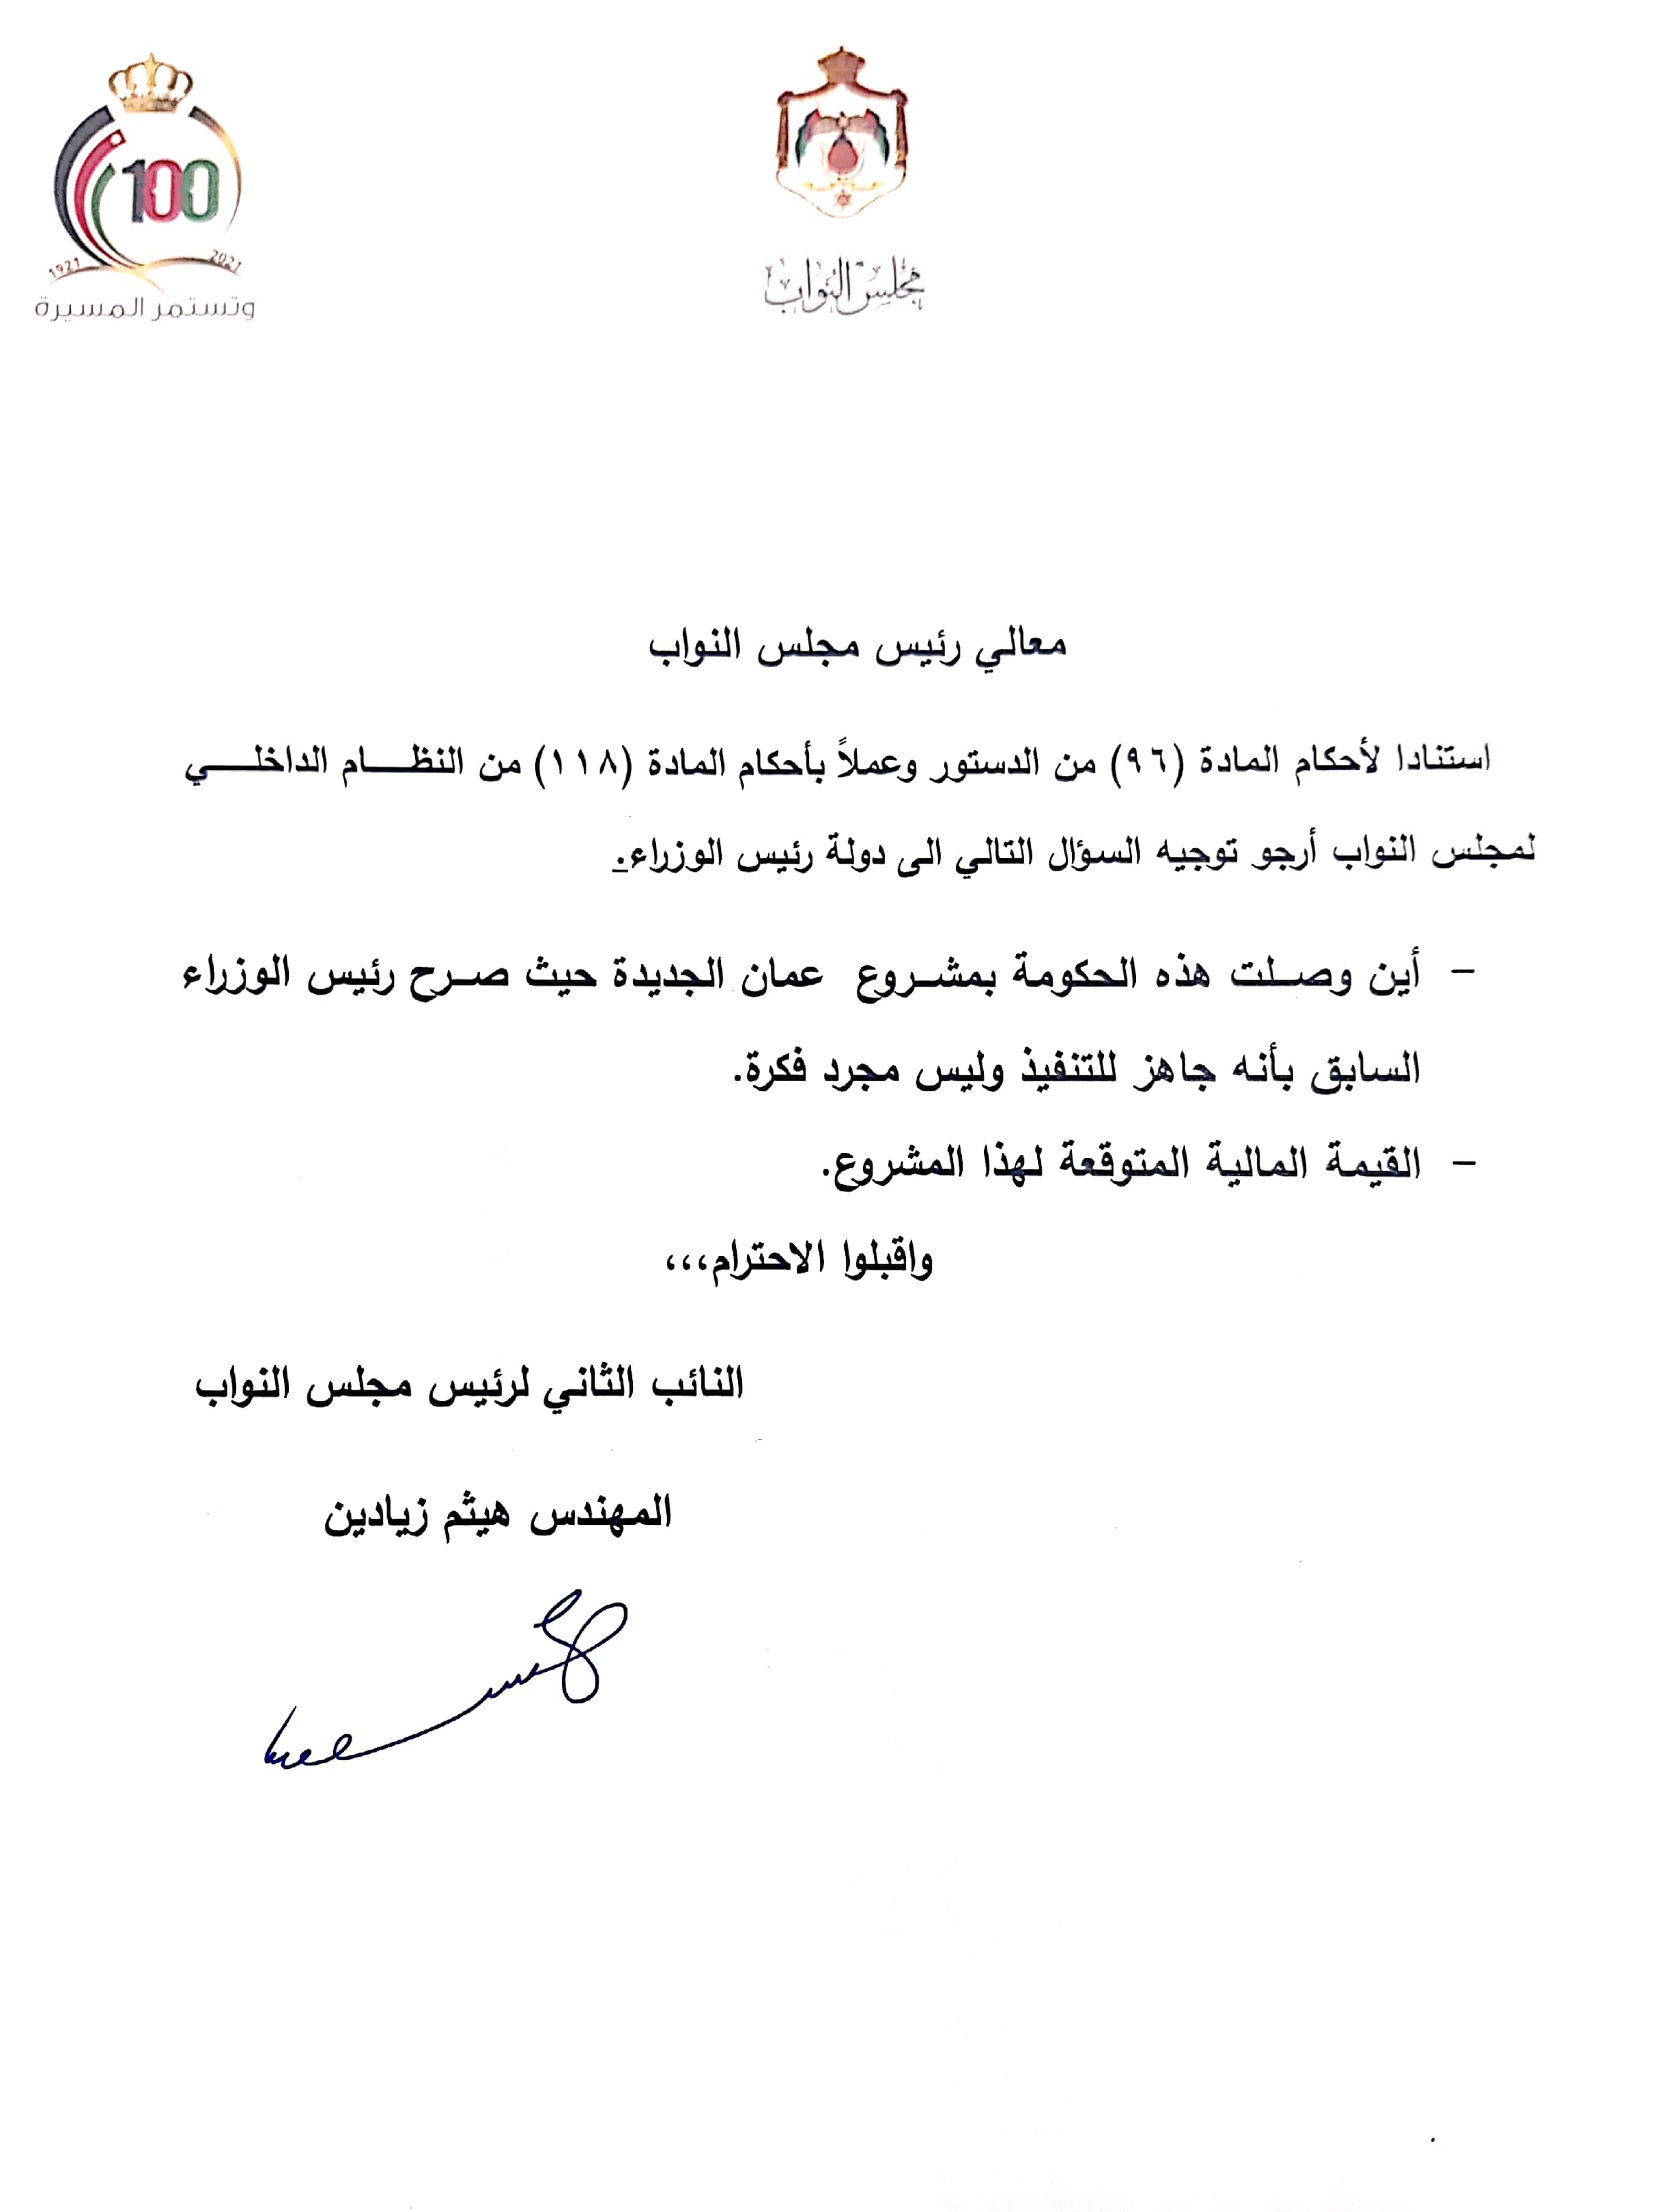 النائب الثاني لرئيس مجلس النواب زيادين يسأل الحكومة عن مشروع عمان الجديدة..وثيقة